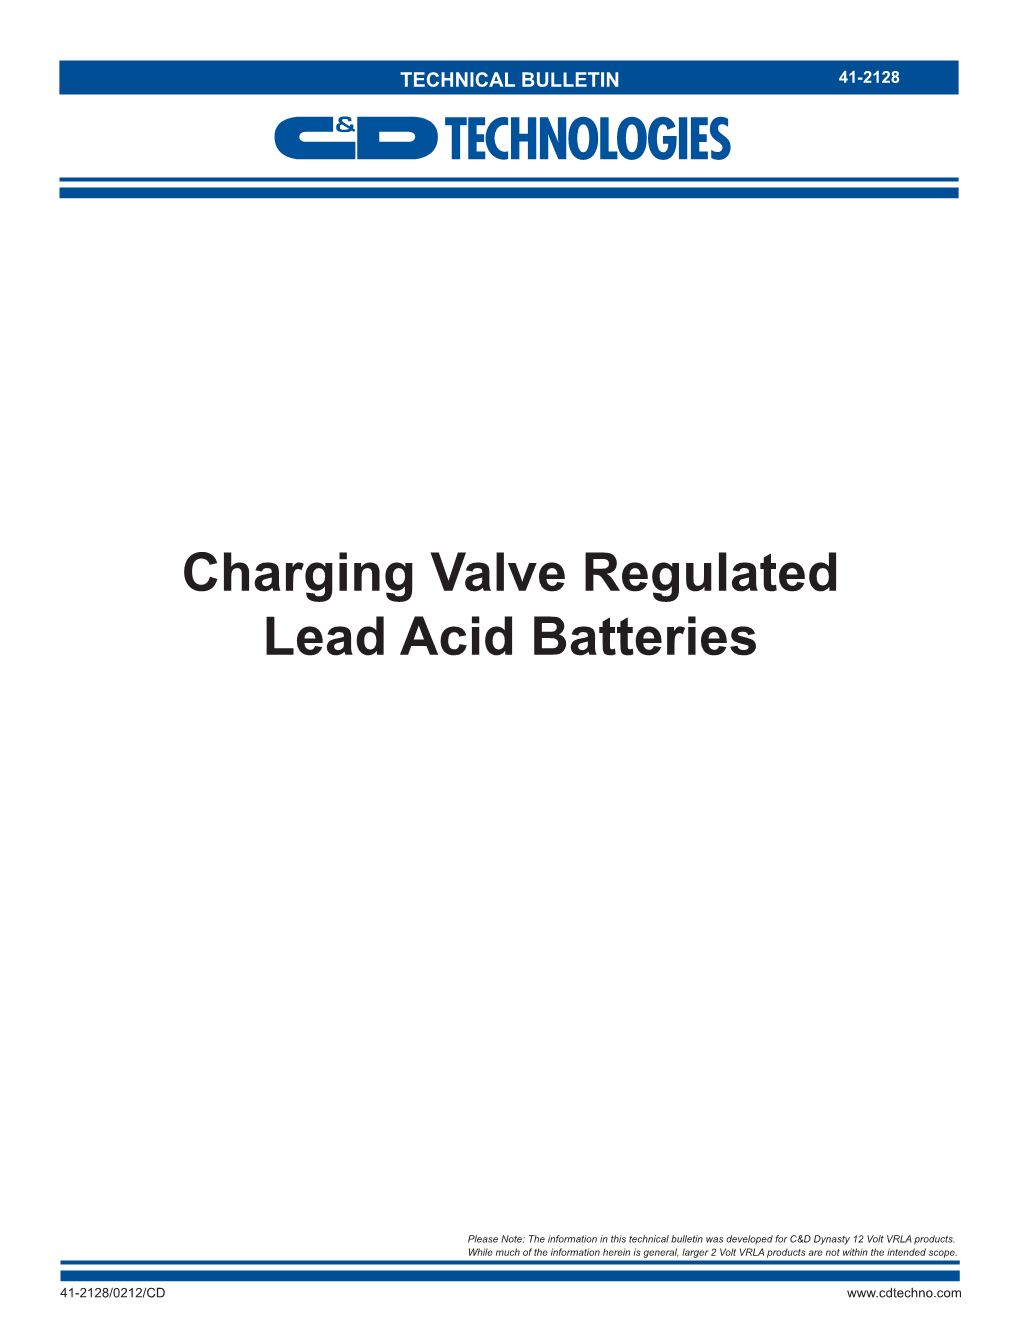 Charging Valve Regulated Lead Acid Batteries